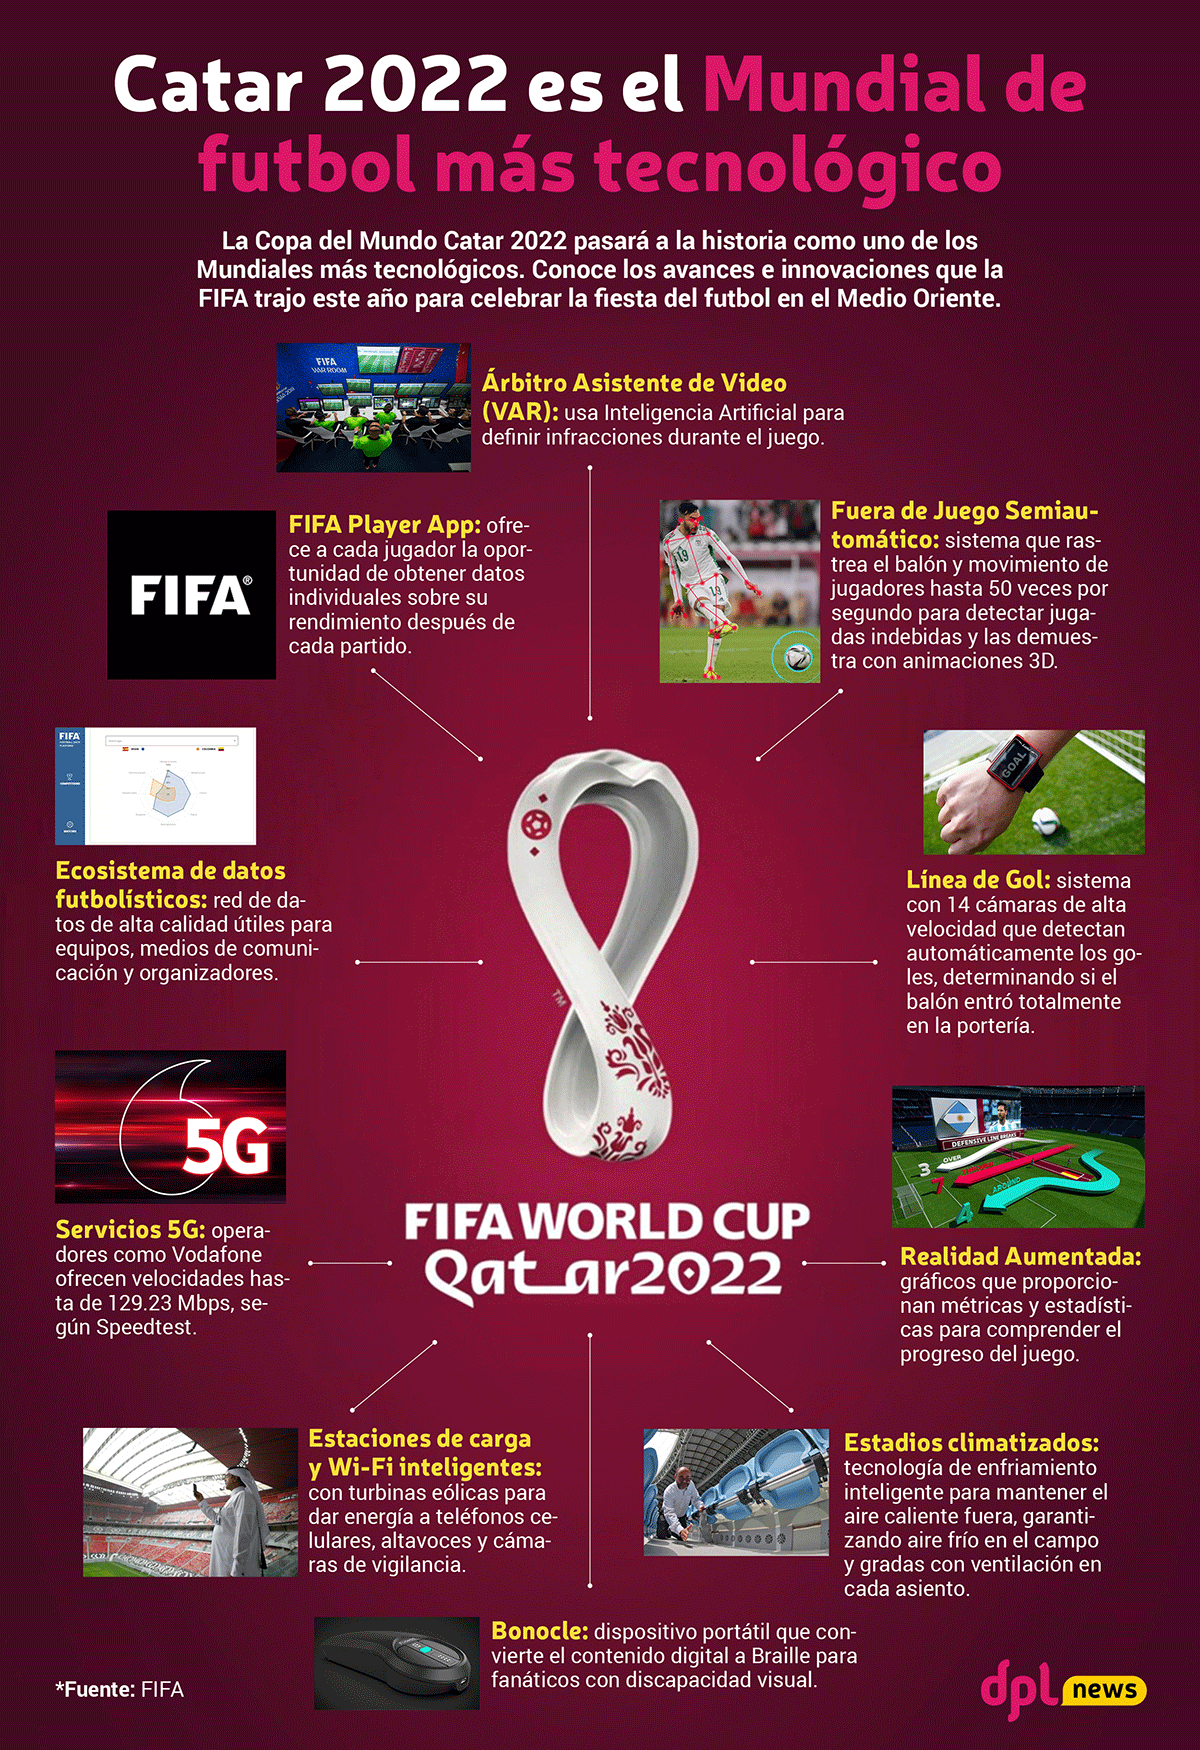 Infografía | Qatar 2022 es el Mundial de futbol más tecnológico